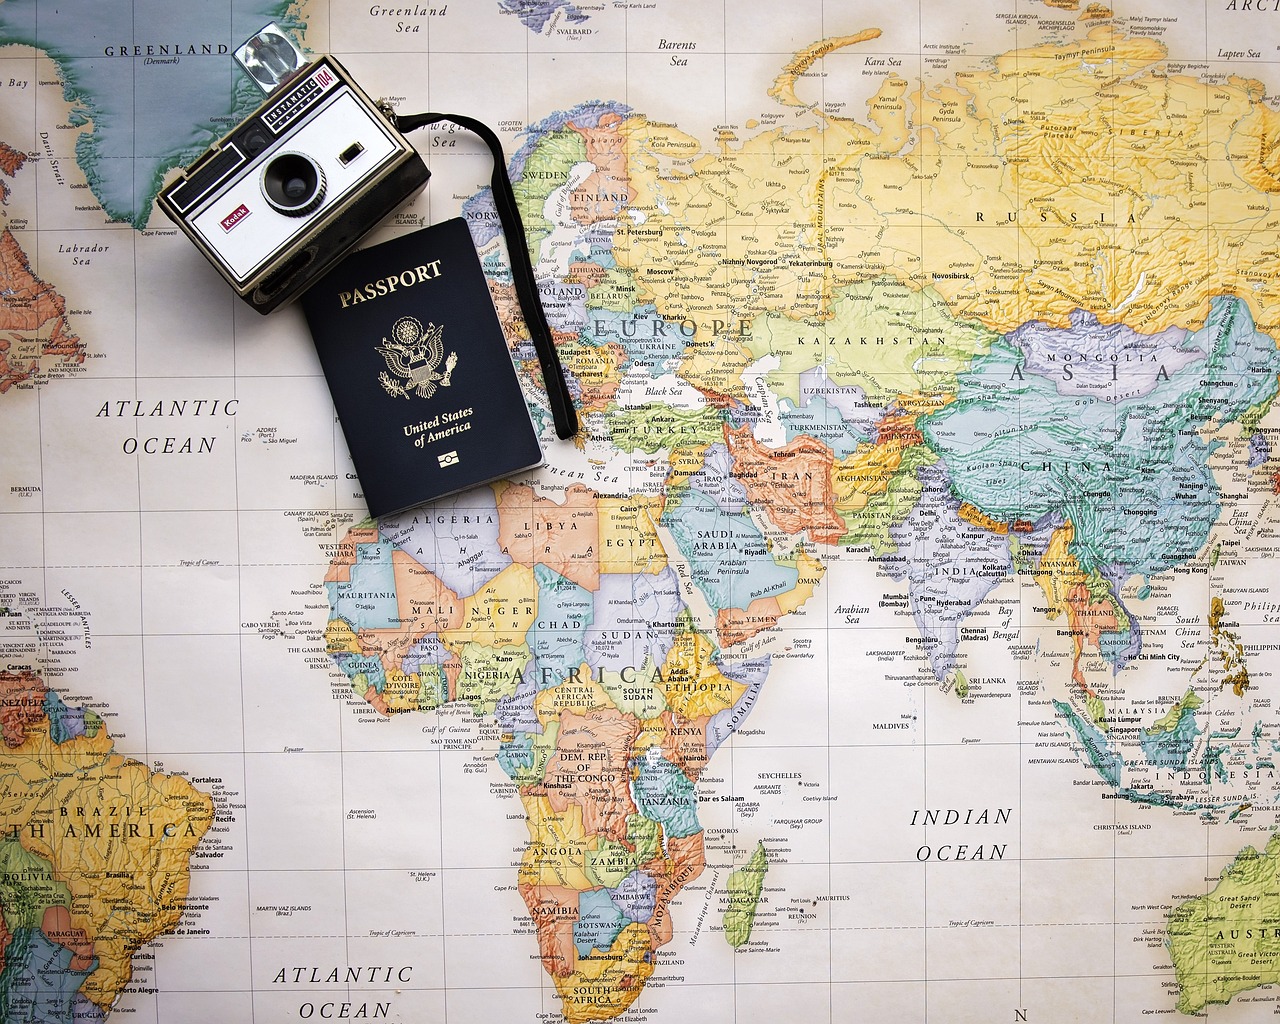 ¿Dónde se tramitan los pasaportes y qué documentos debe llevar?